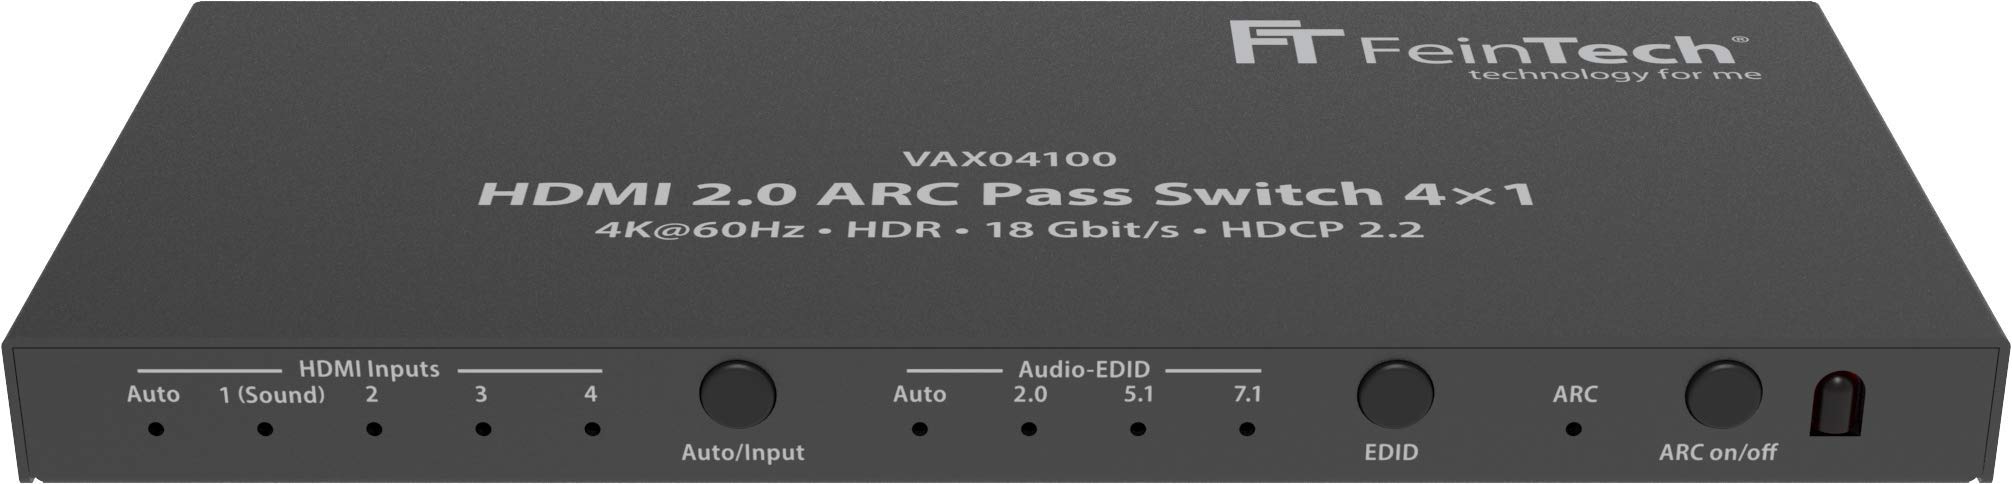 FeinTech VAX04100 HDMI 2.0 ARC Pass Switch 4x1, für 3 HDMI-Quellen, Soundbar und TV Beamer 4K@60Hz| HDR | 18Gbit/s | HDCP 2.2 Dolby Atmos